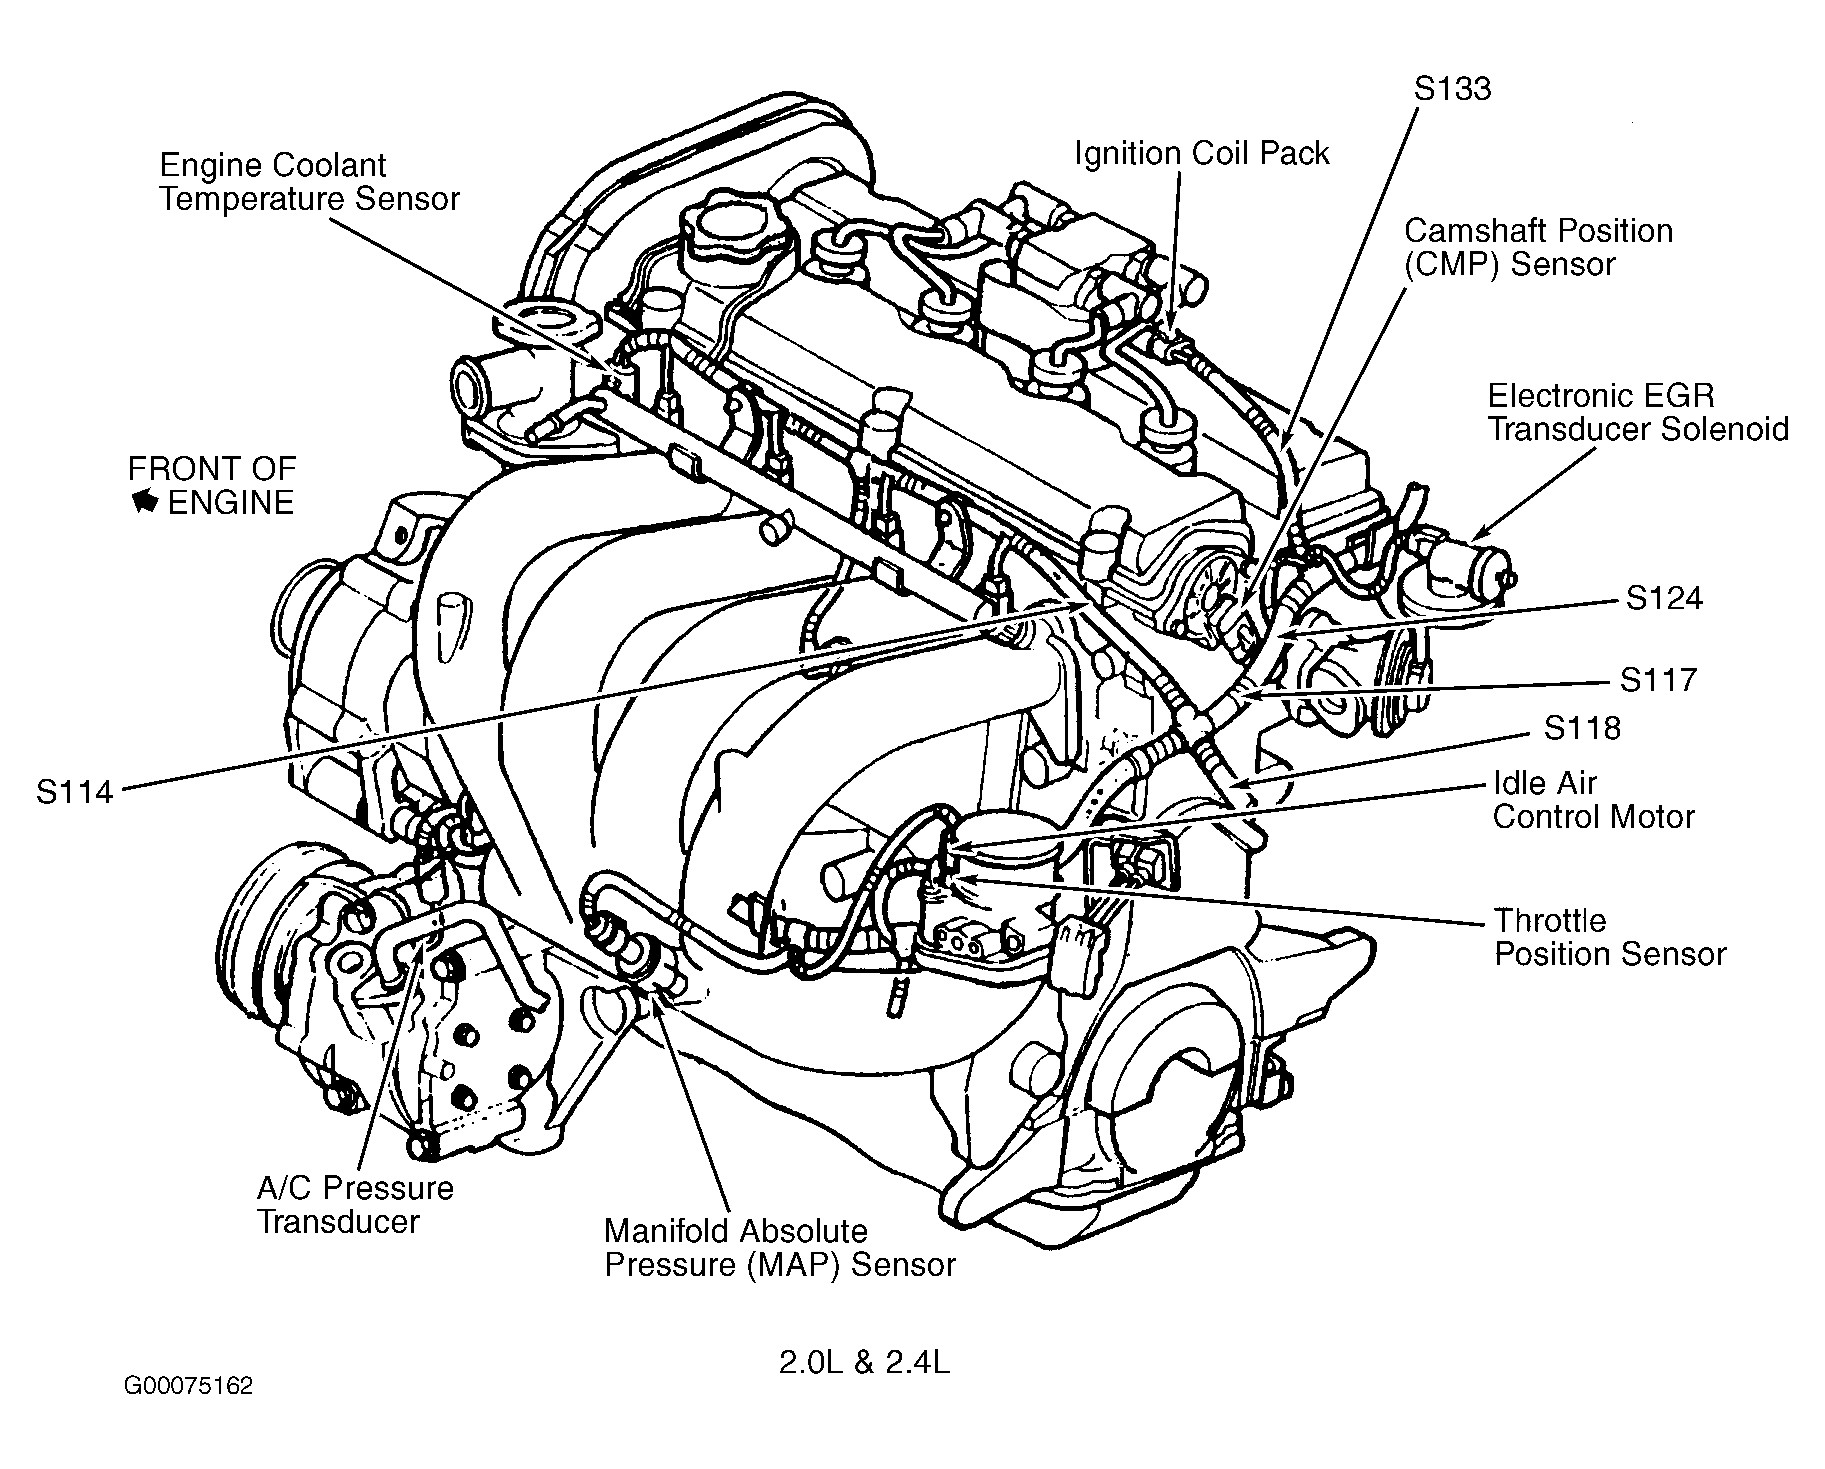 2000 Dodge Intrepid 2 7 Engine Diagram 2 2008 Chrysler 2 7 Engine Diagram Of 2000 Dodge Intrepid 2 7 Engine Diagram 2